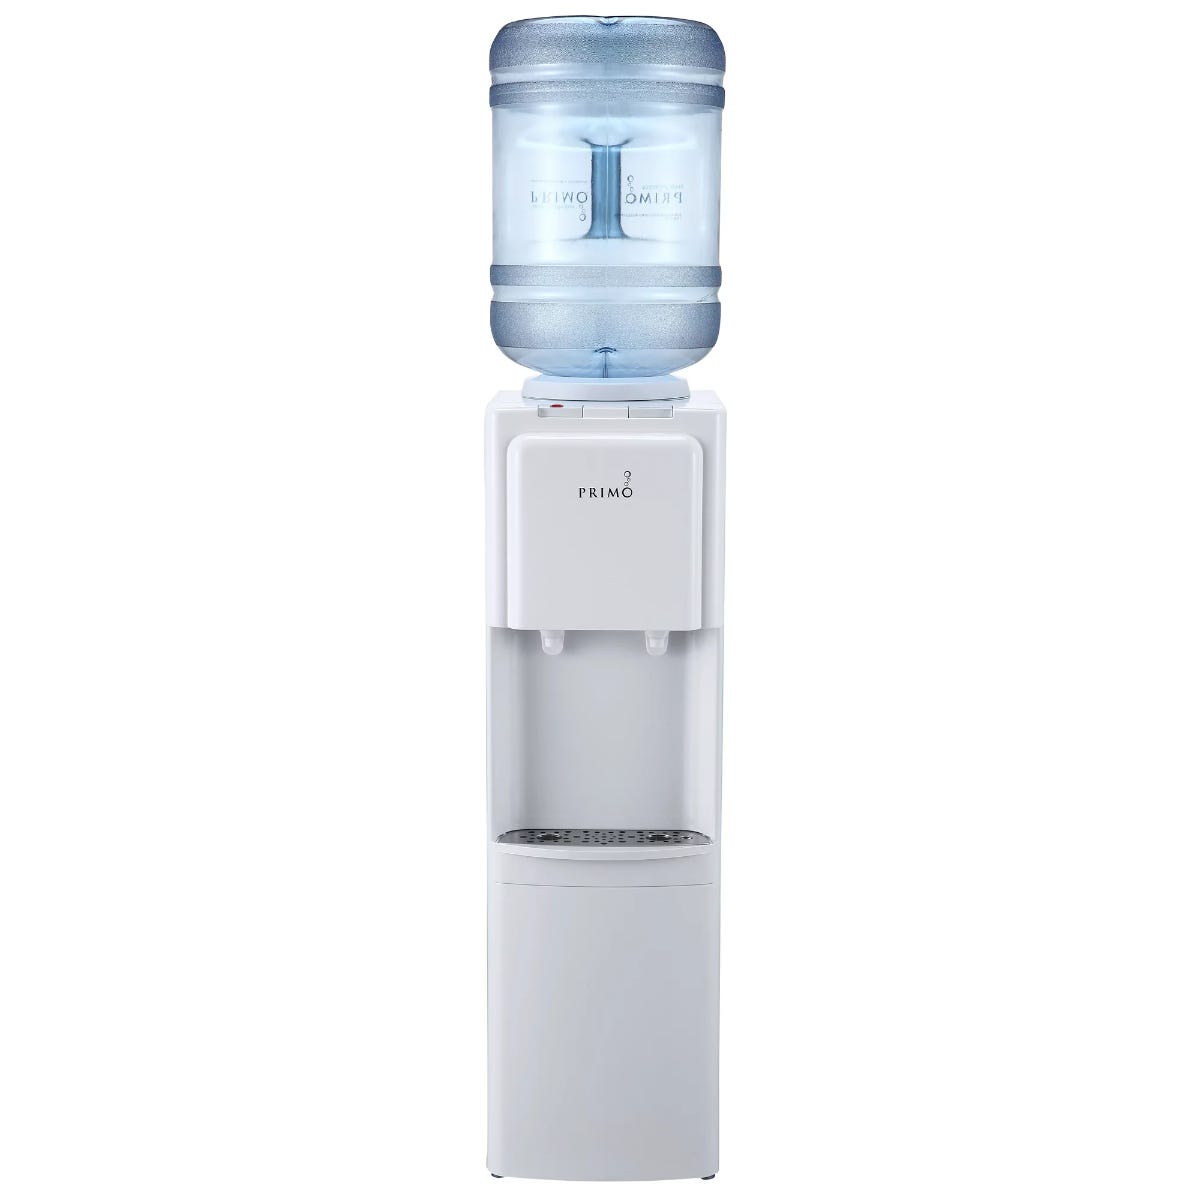 Top Loading Water Dispenser- White